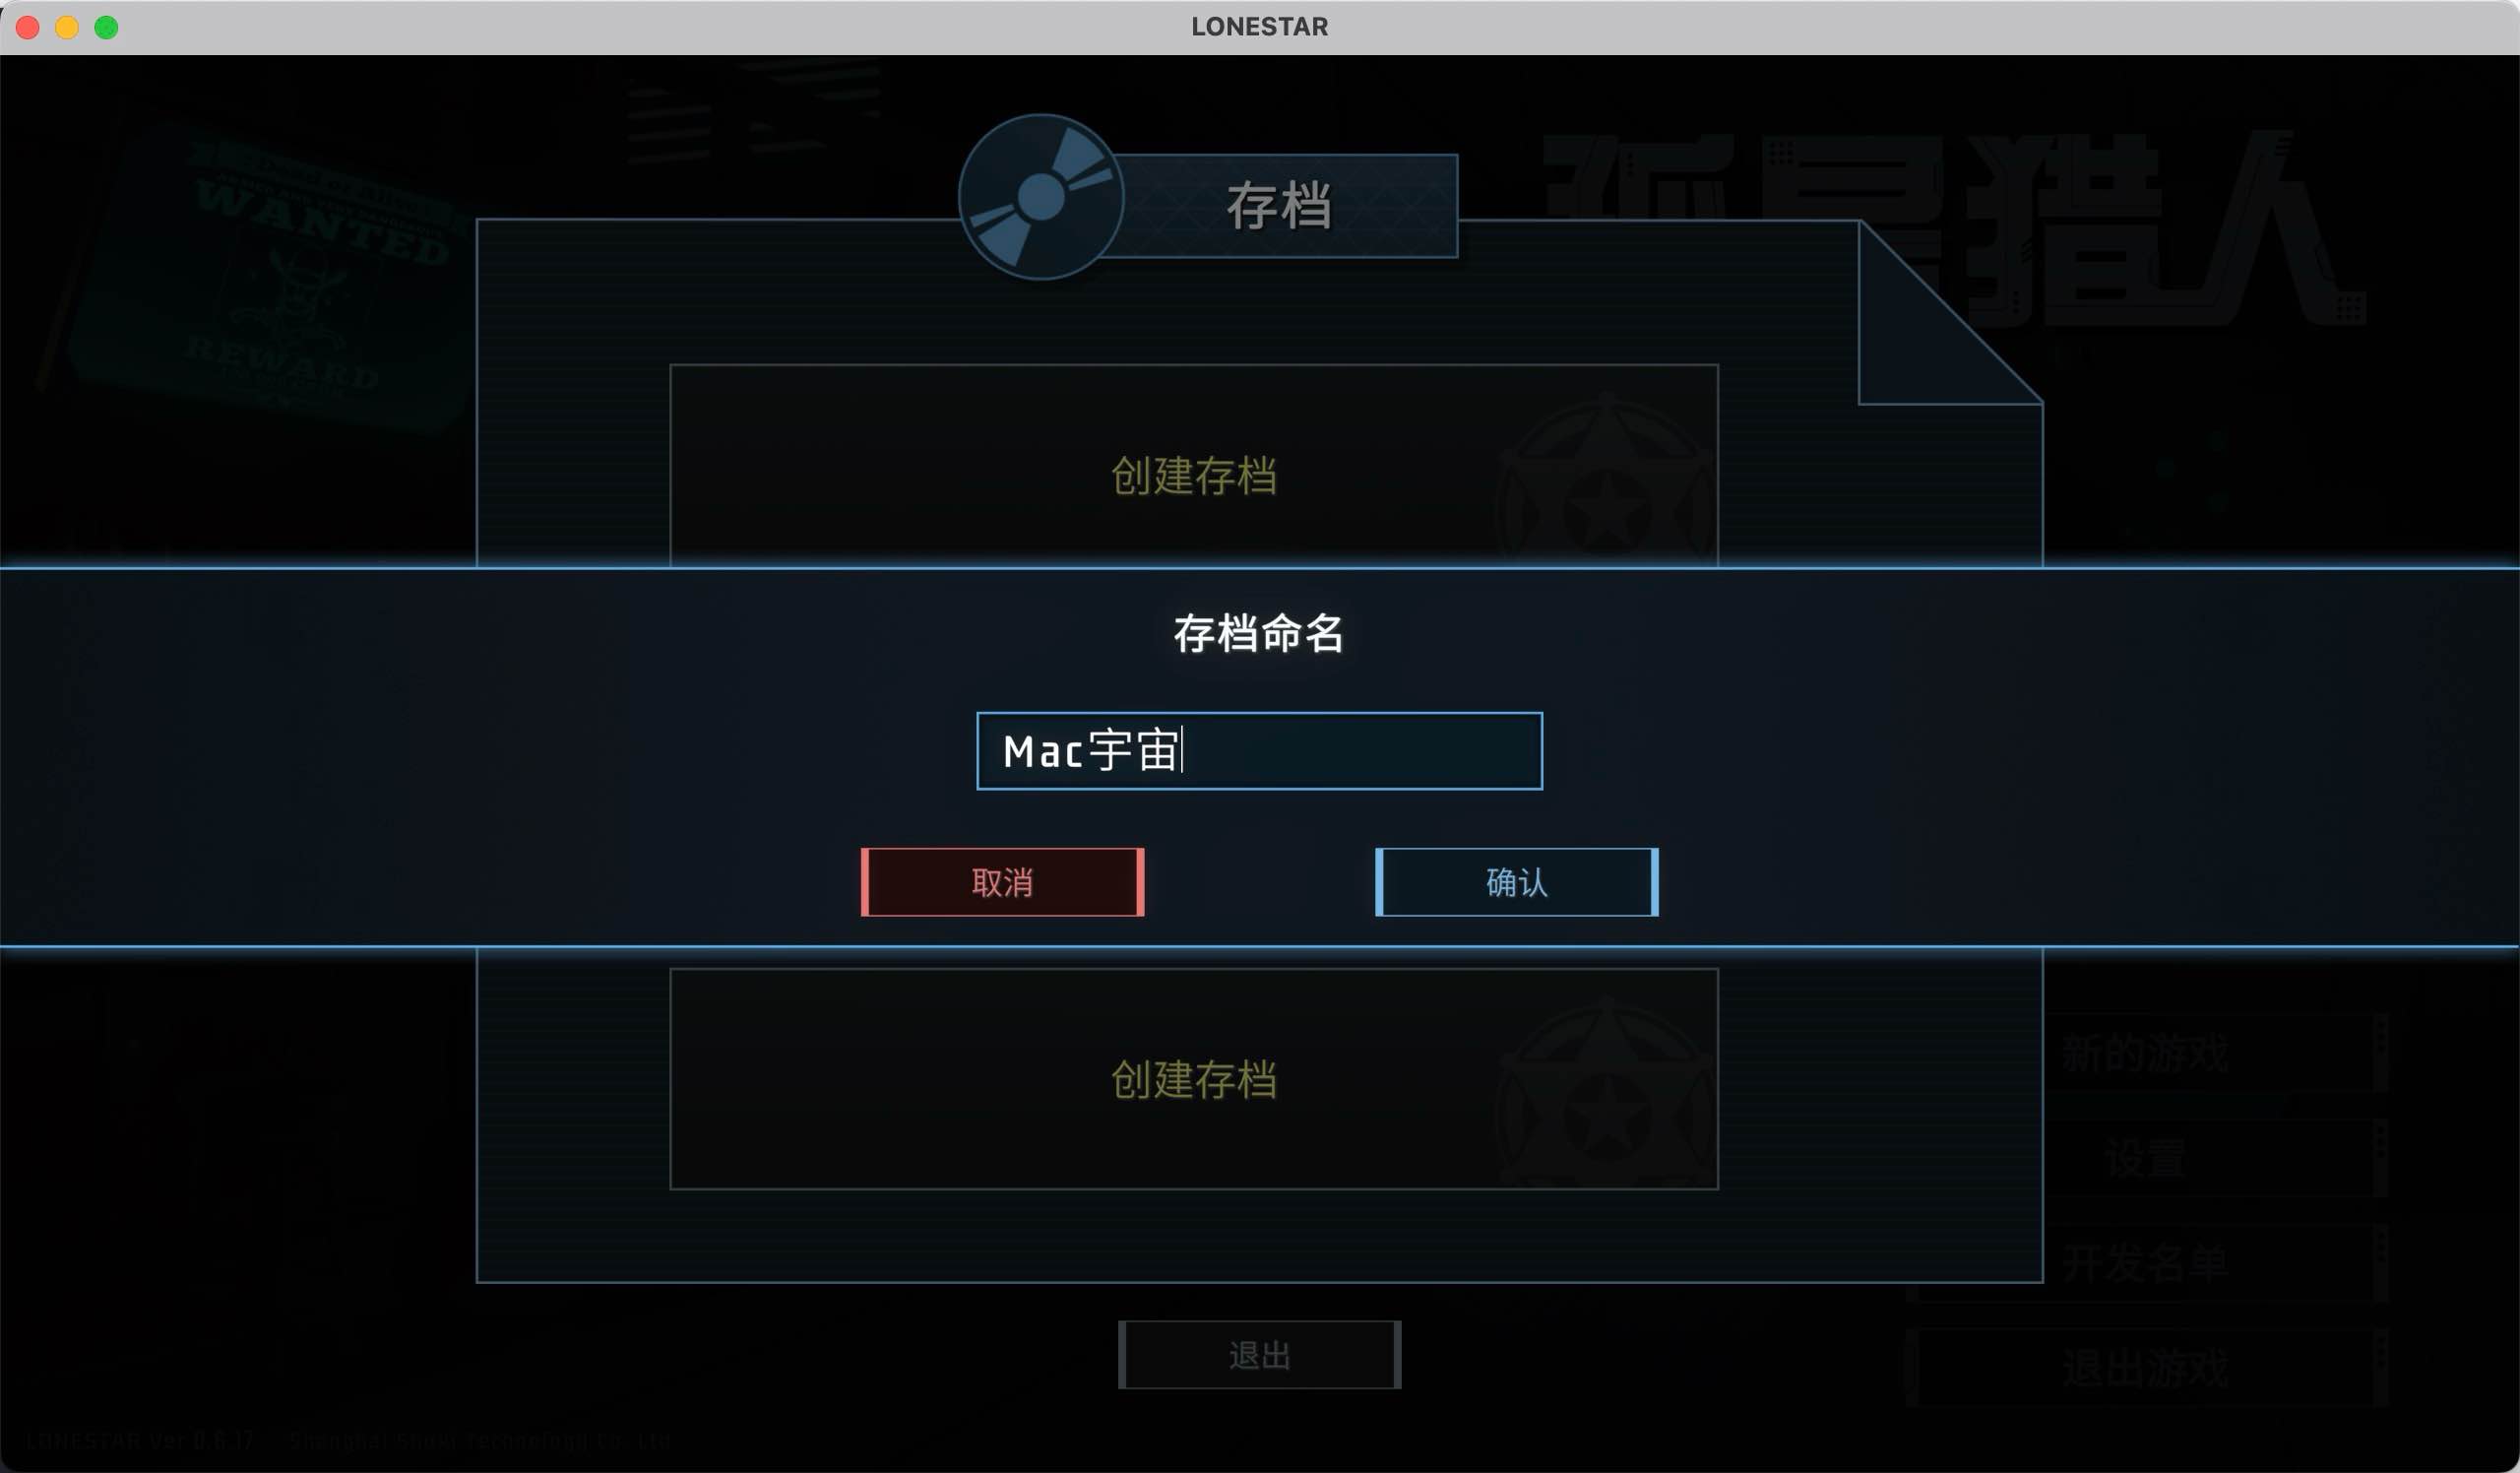 孤星猎人 for Mac LONESTAR v0.6.17 中文原生版 苹果电脑